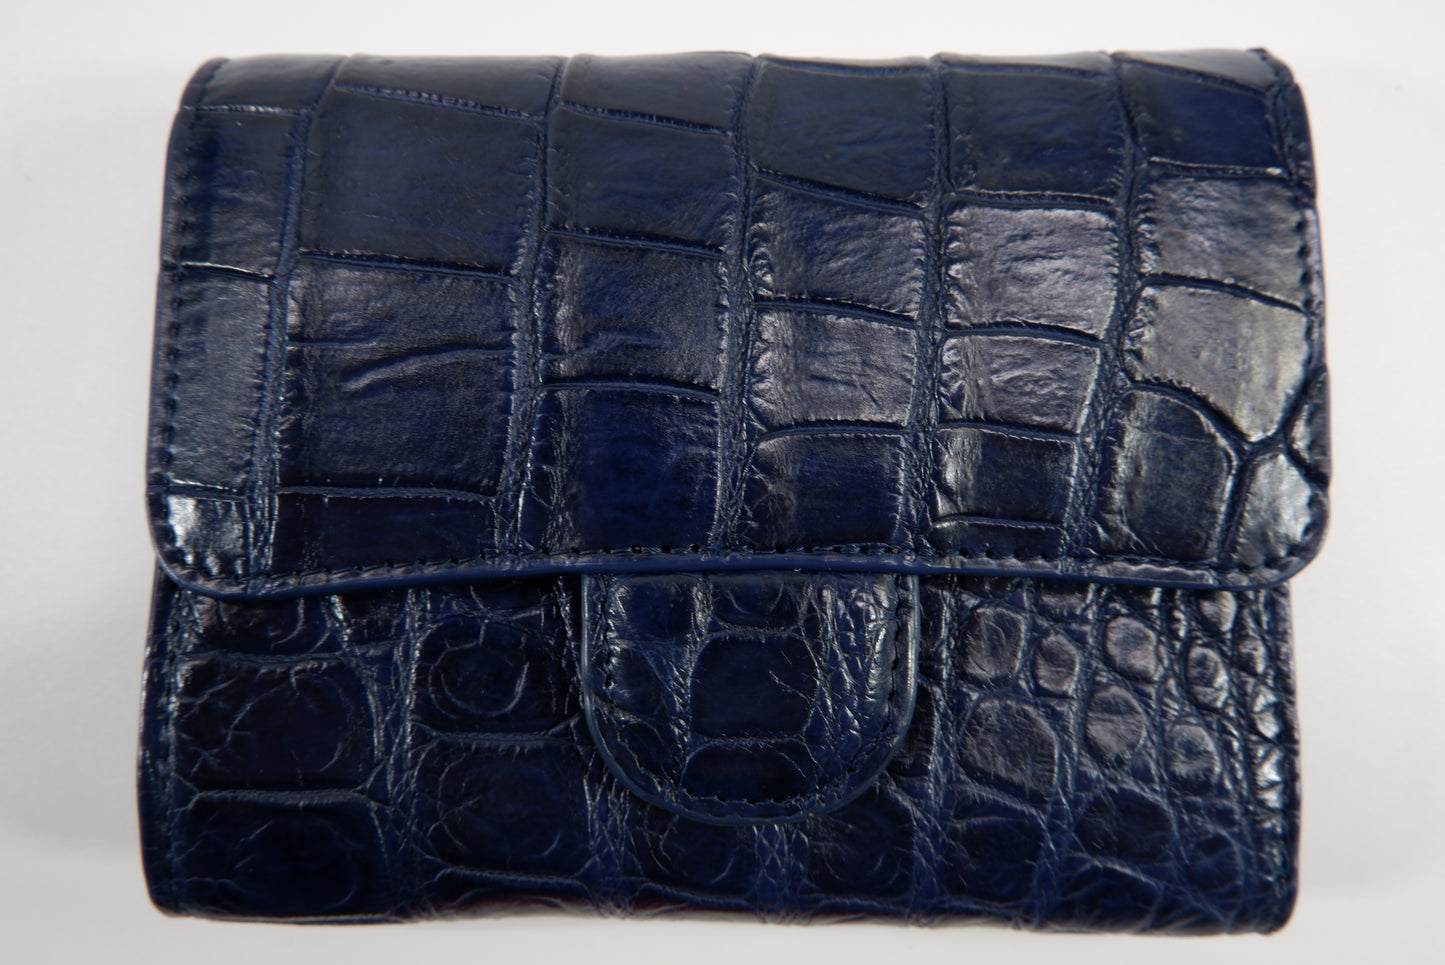 Genuine Crocodile Belly Skin Leather Medium Trifold Clutch Wallet Purse